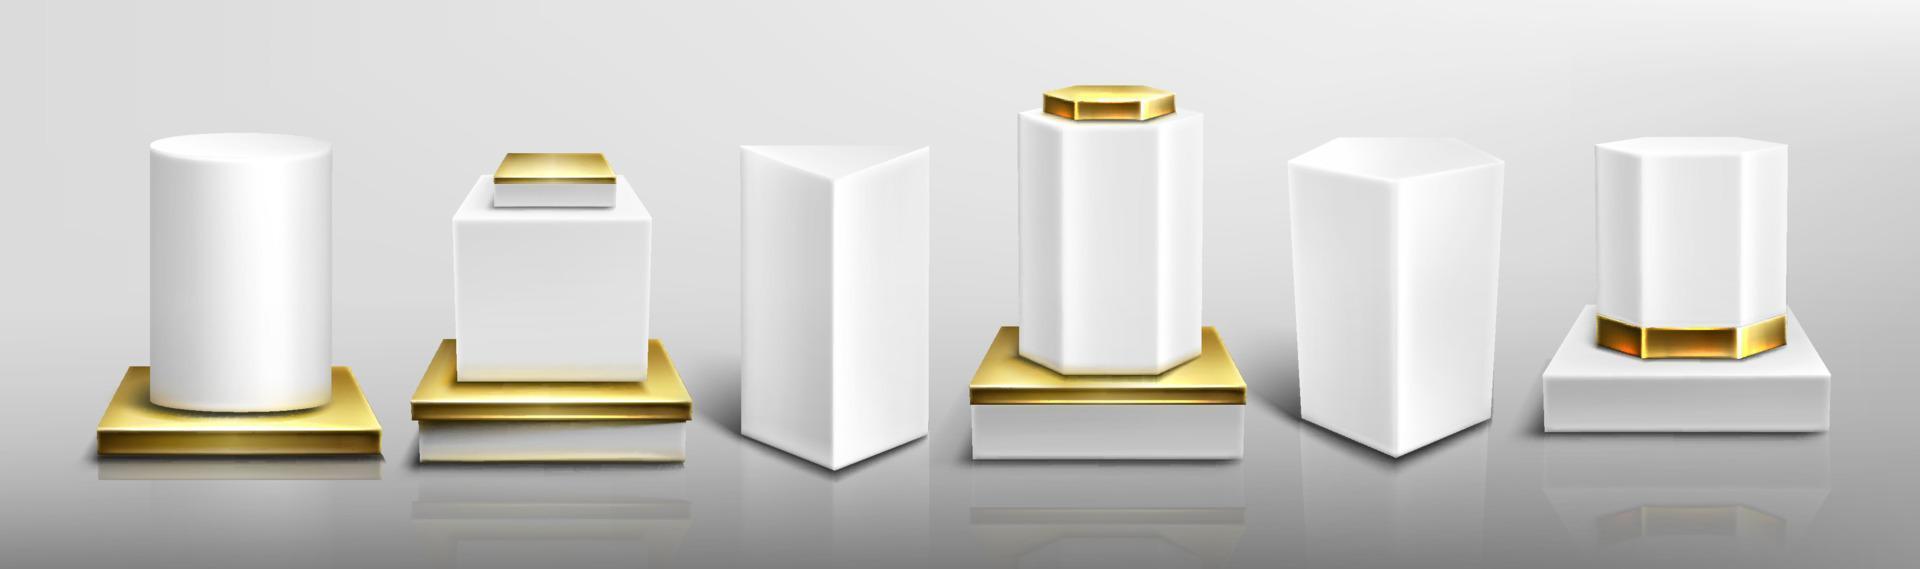 pedestales o podios blancos con base dorada vector